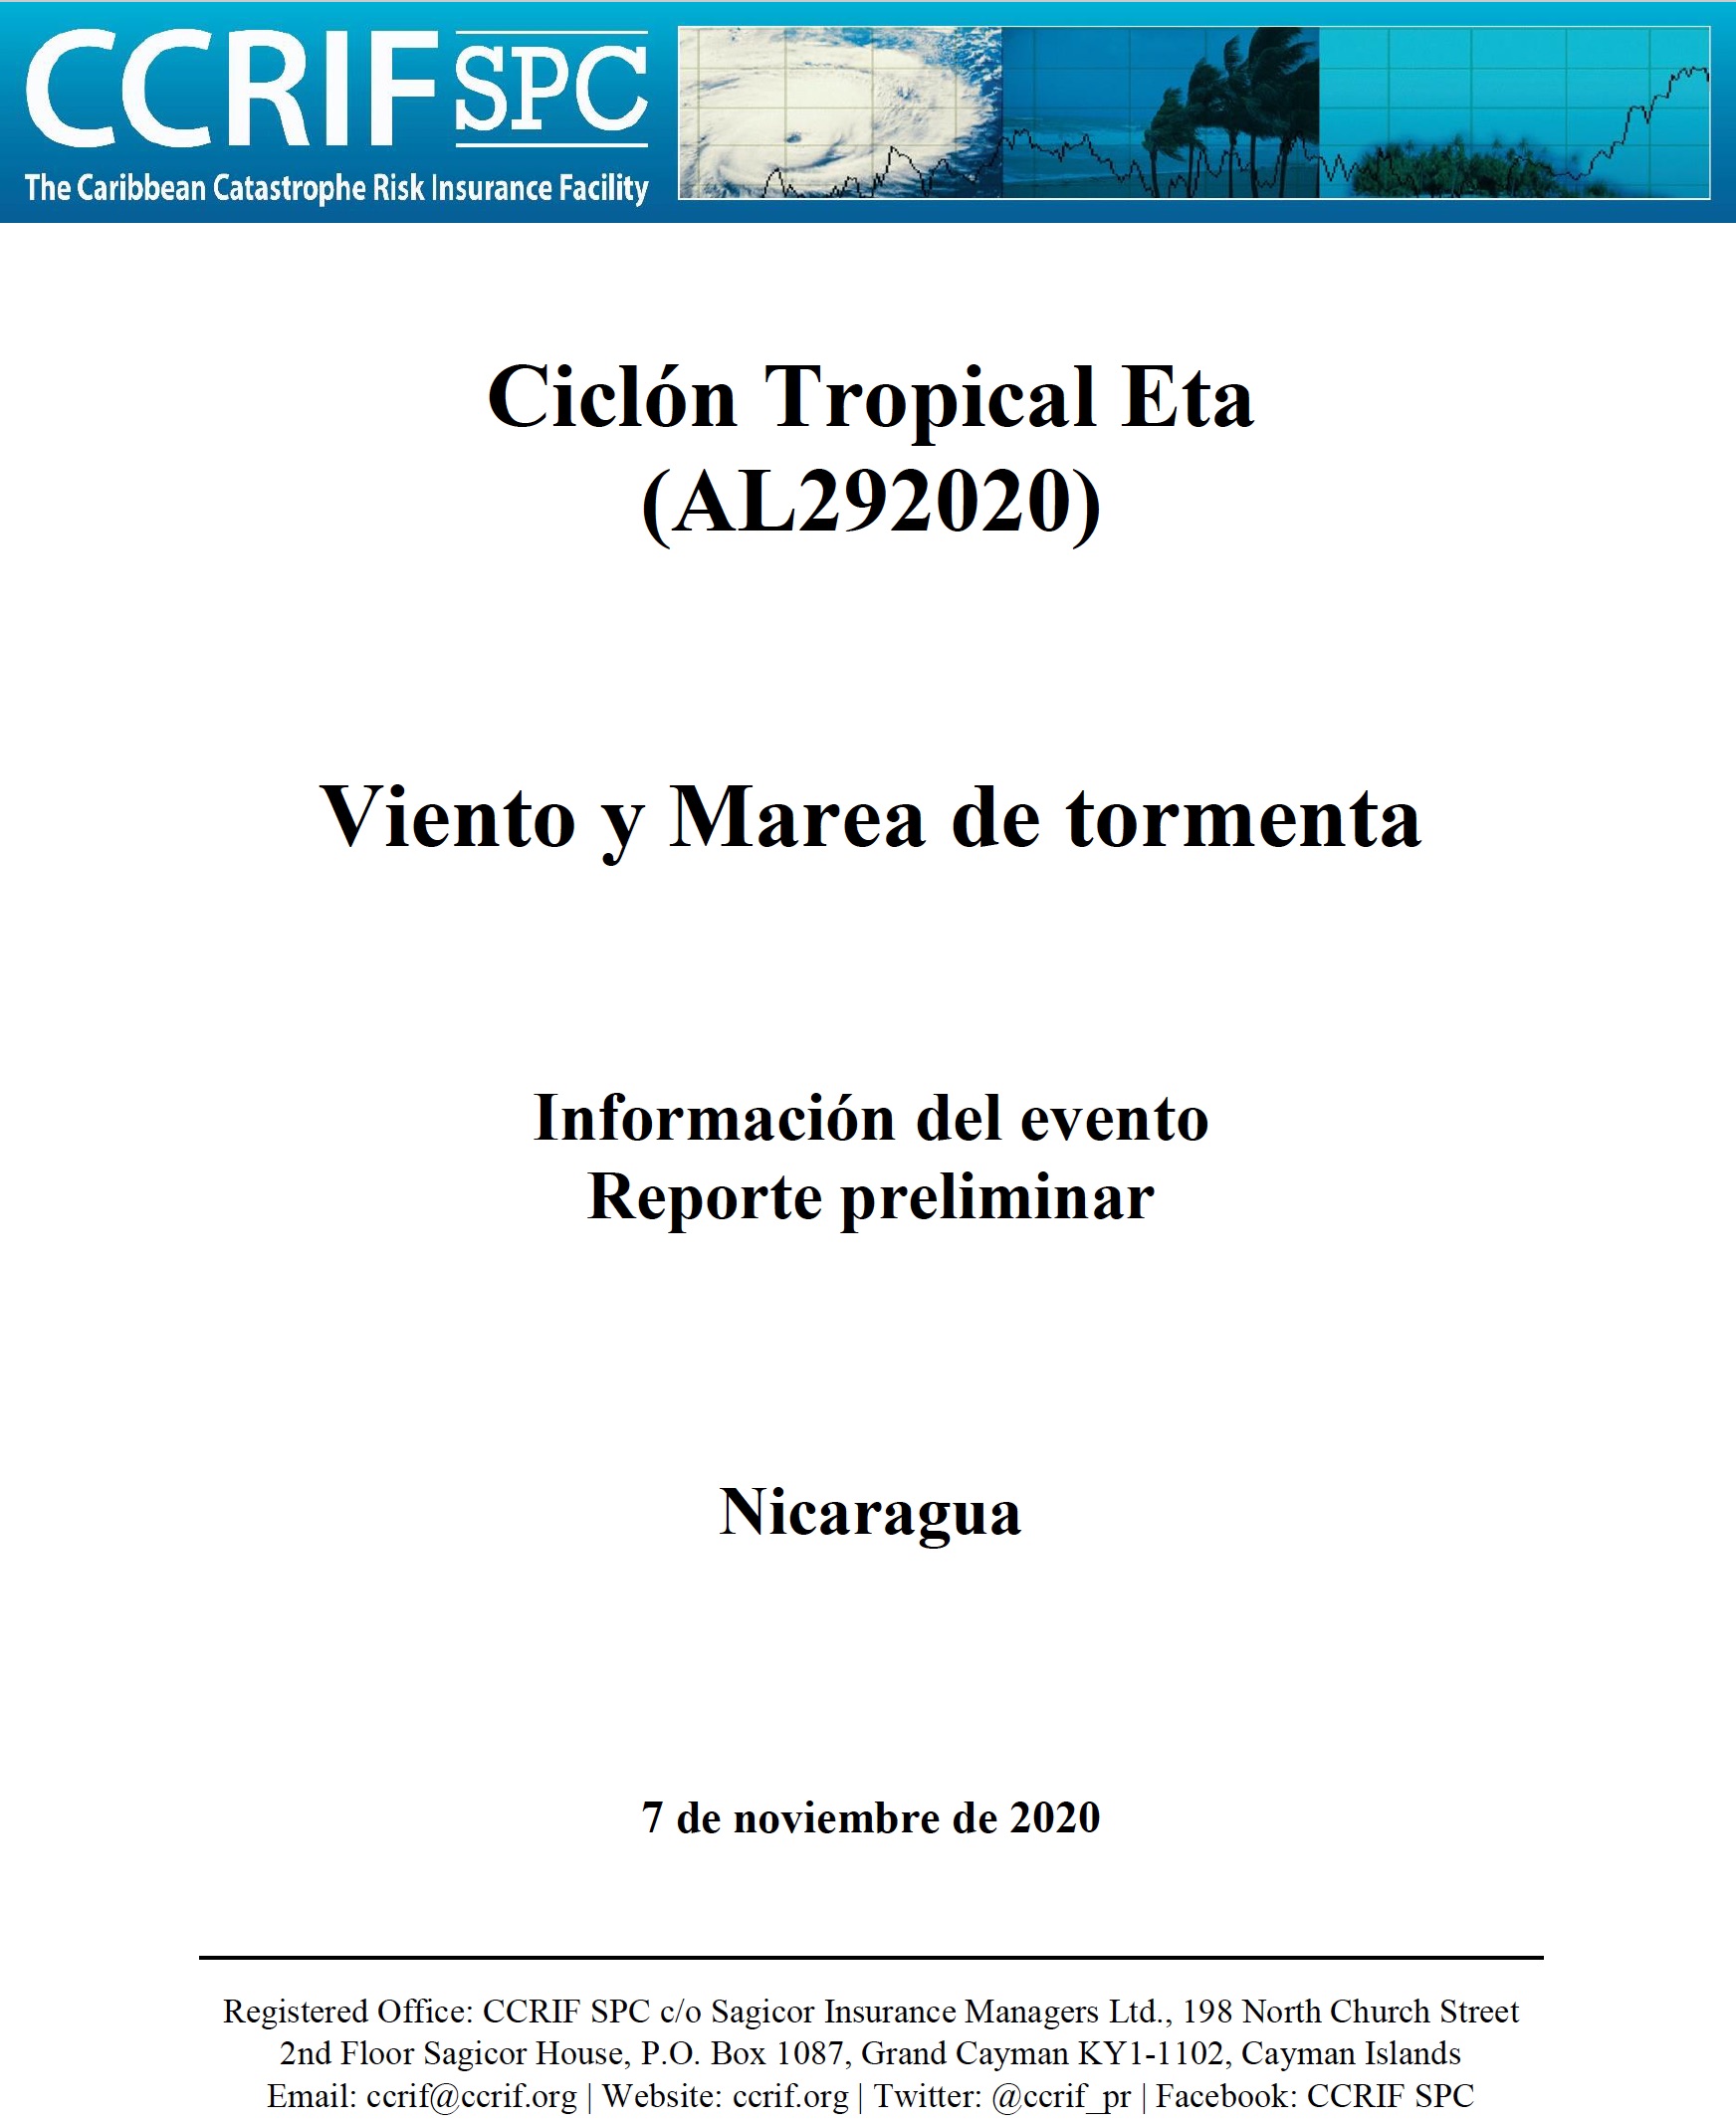 Información del evento - Viento y Marea de tormenta - Ciclón Tropical Eta - Nicaragua - 7 de noviembre de 2020